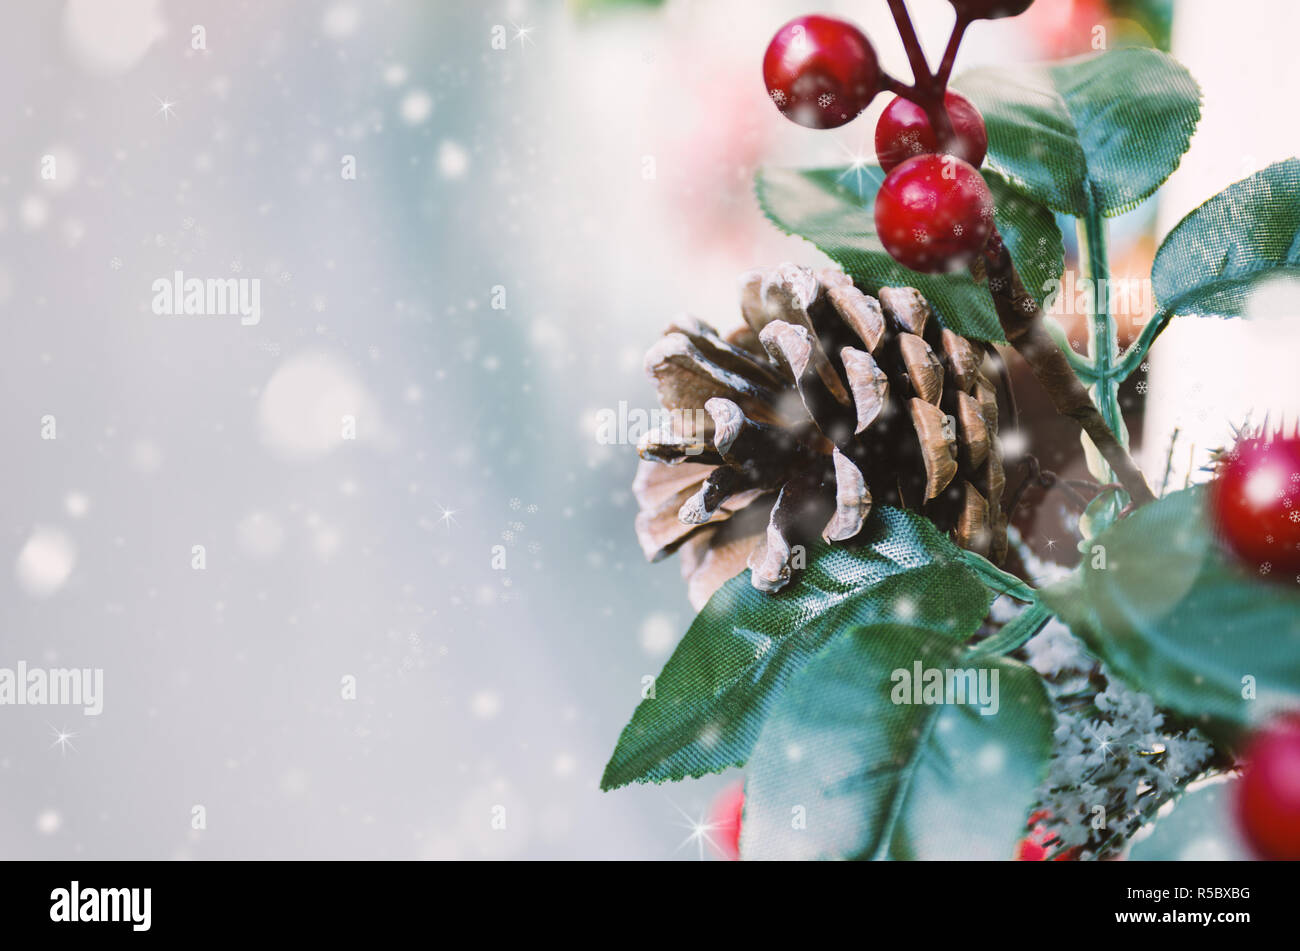 Winterurlaub Postkarte - Urlaub Hintergrund mit Weihnachtsdekor und Schnee. Zusammensetzung von Pine Cone, rote Beeren, grüne Blätter. Neues Jahr Gruß c Stockfoto